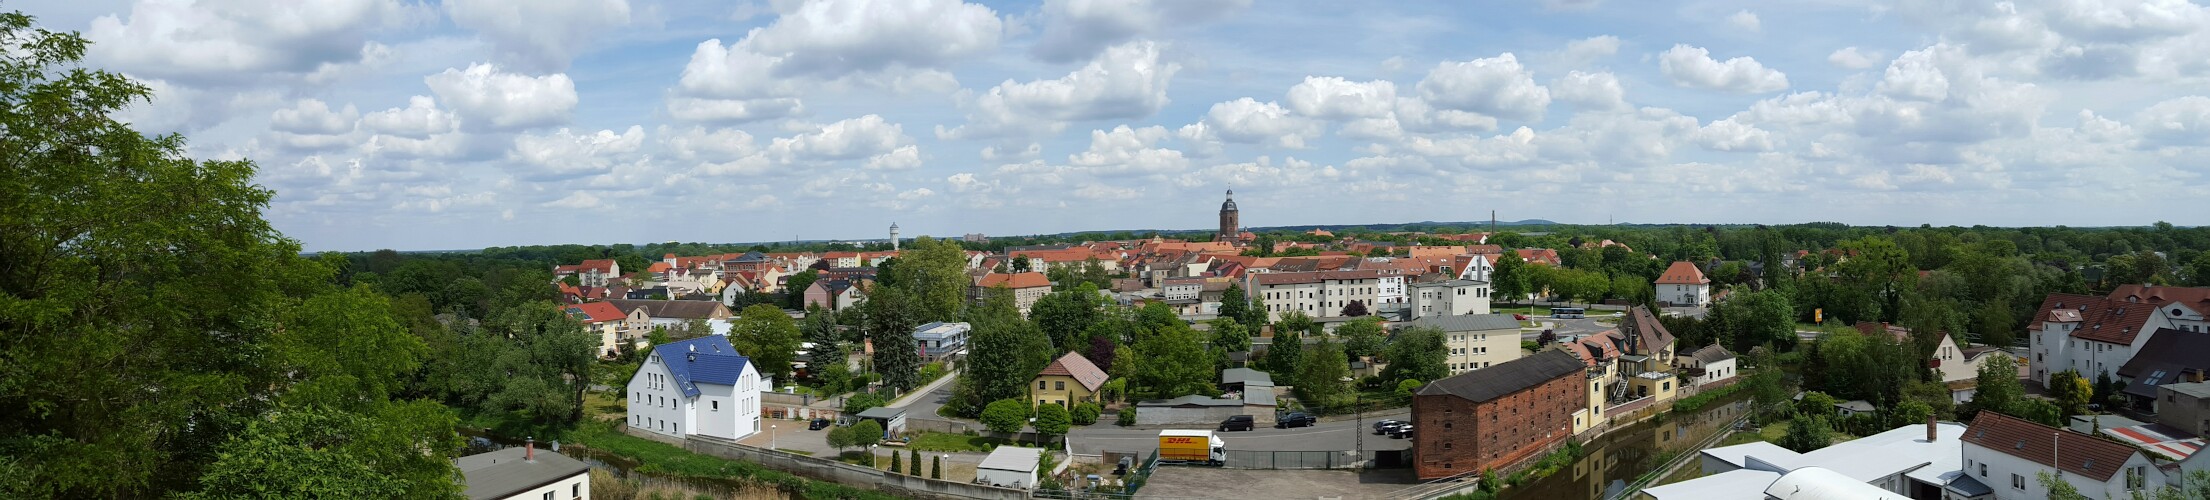 Eilenburg